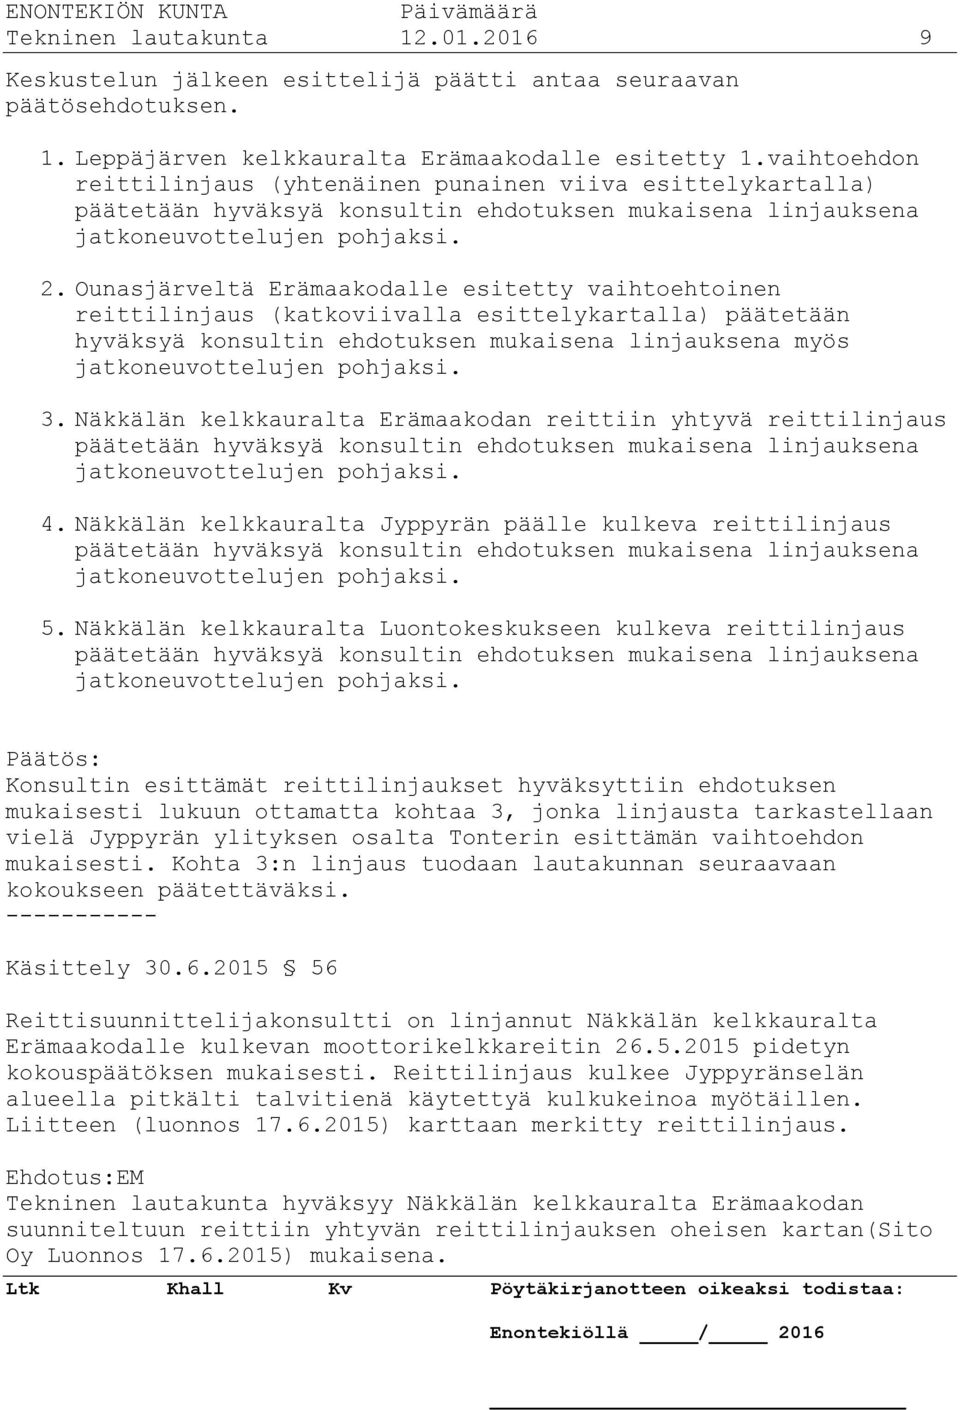 Ounasjärveltä Erämaakodalle esitetty vaihtoehtoinen reittilinjaus (katkoviivalla esittelykartalla) päätetään hyväksyä konsultin ehdotuksen mukaisena linjauksena myös jatkoneuvottelujen pohjaksi. 3.